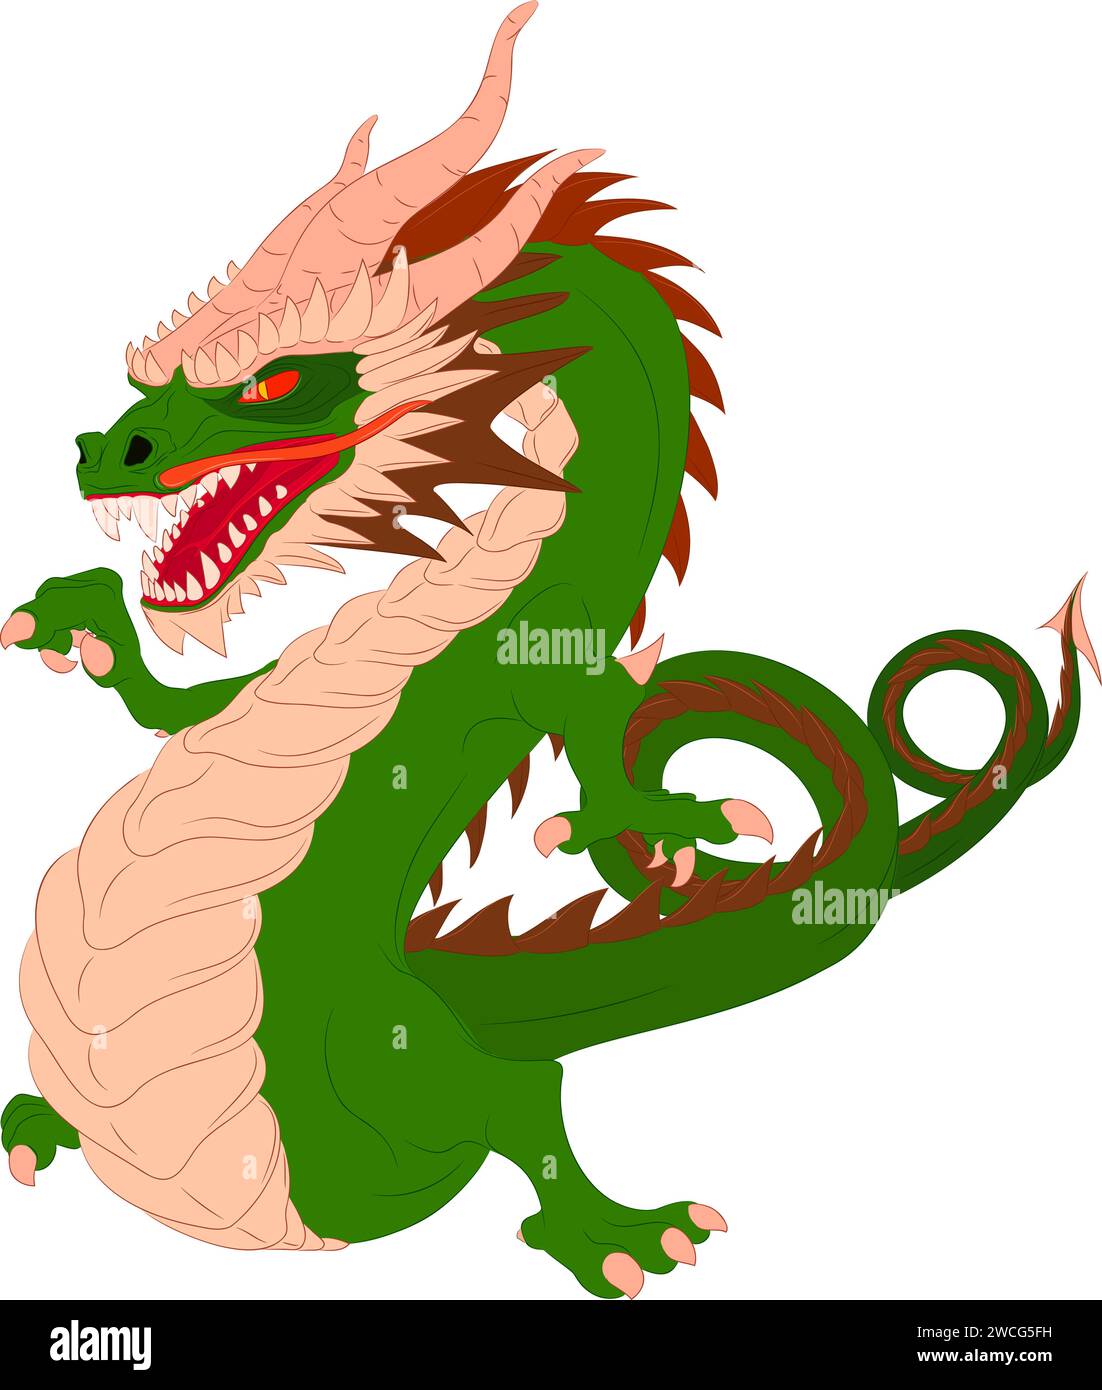 Drago di legno verde danzante senza ali. Illustrazione vettoriale di un drago di legno verde danzante asiatico che punta con il dito destro della zampa Illustrazione Vettoriale